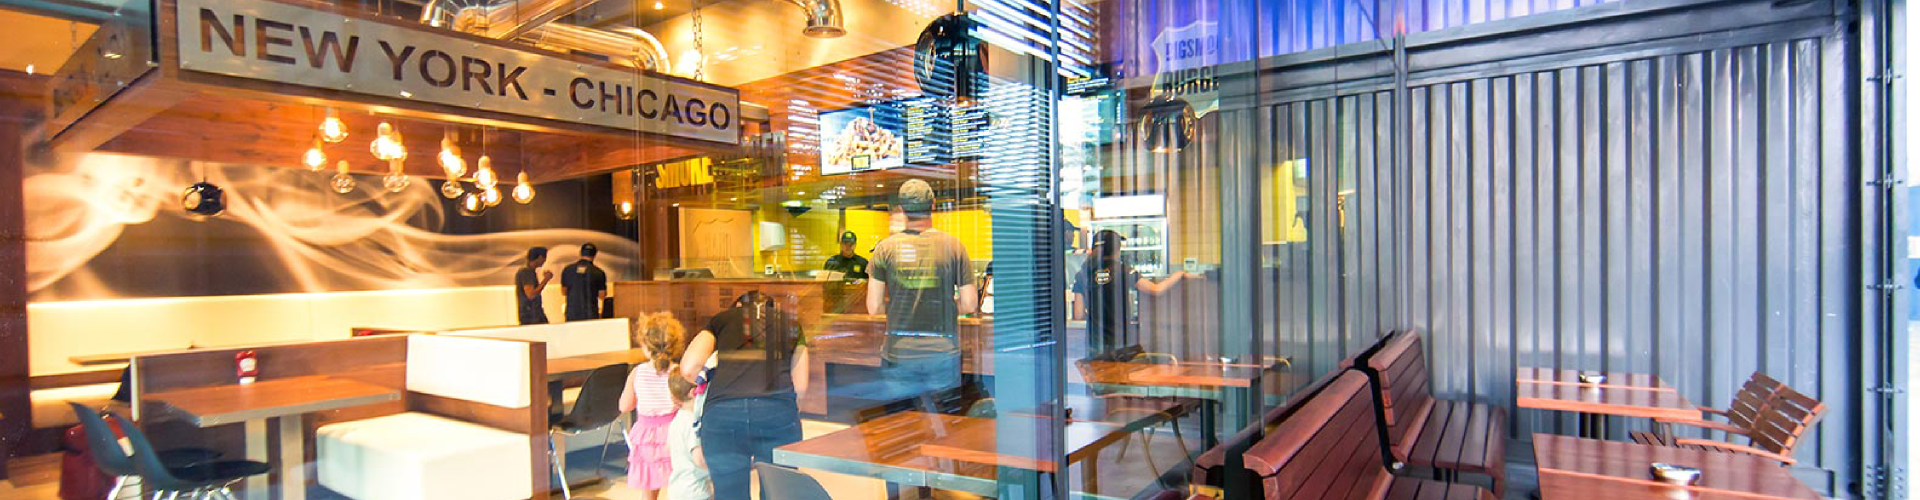 سمنطقة تناول الطعام في مطعم بيج سموك برجر مع لافتة مكتوب عليها نيويورك   شيكاجو 